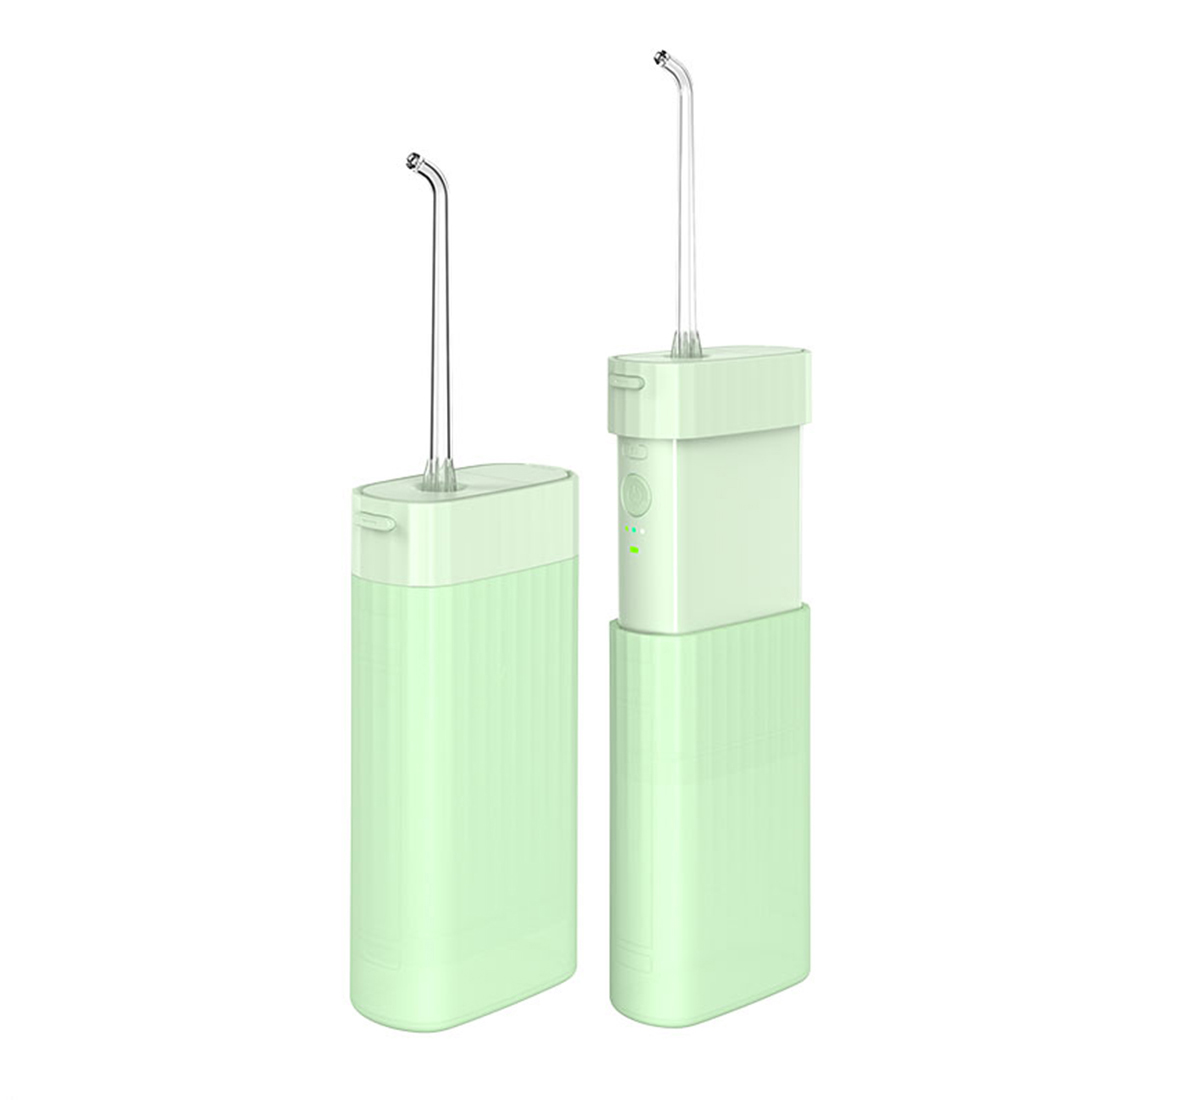 Newest teeth cleaning kit Compact Dental Teeth oral Irrigator in 100% Waterproof Design MS18